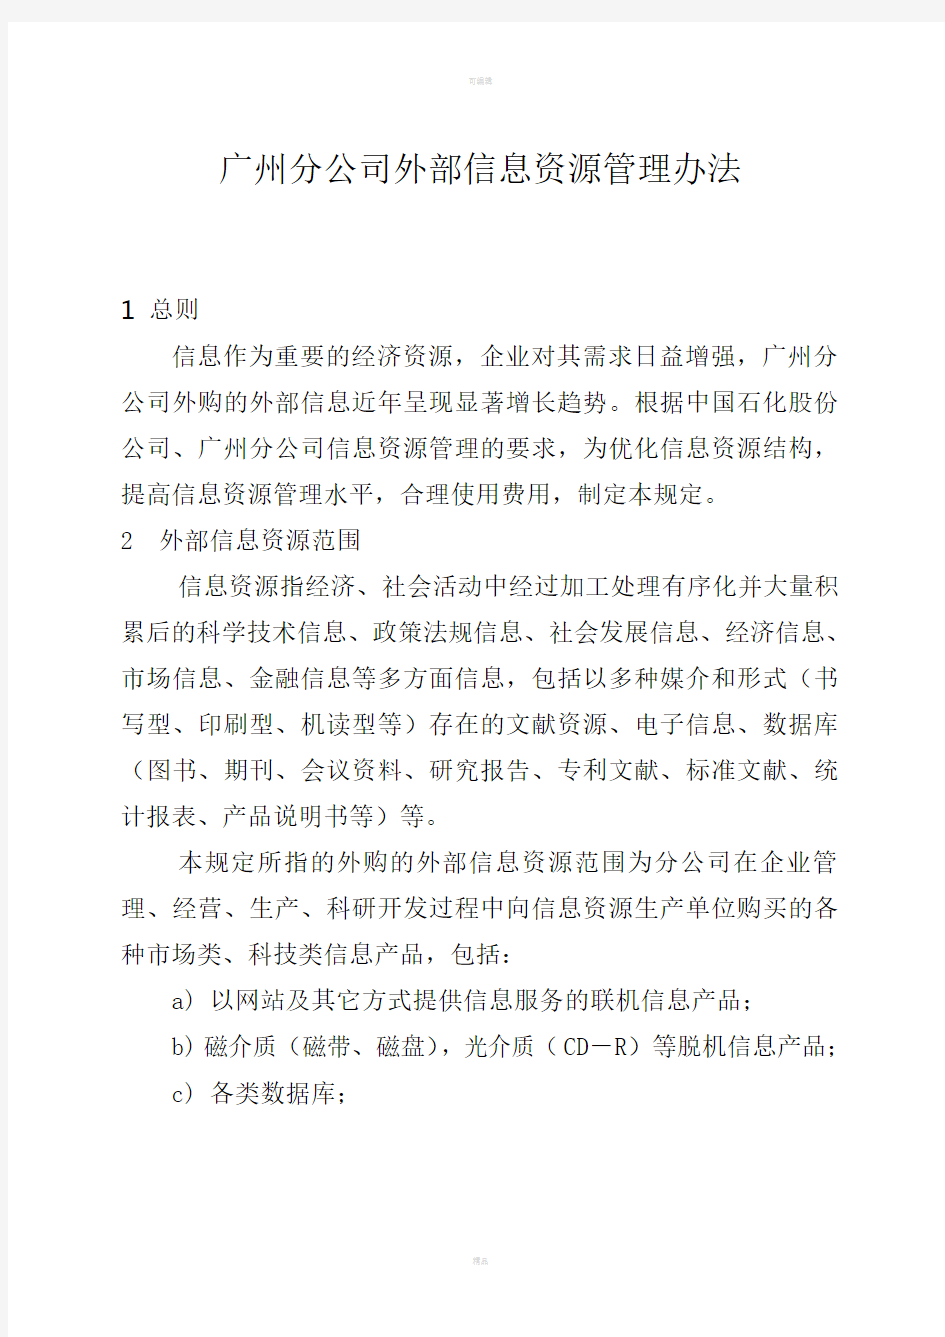 广州分公司外部信息资源管理规定(修订)